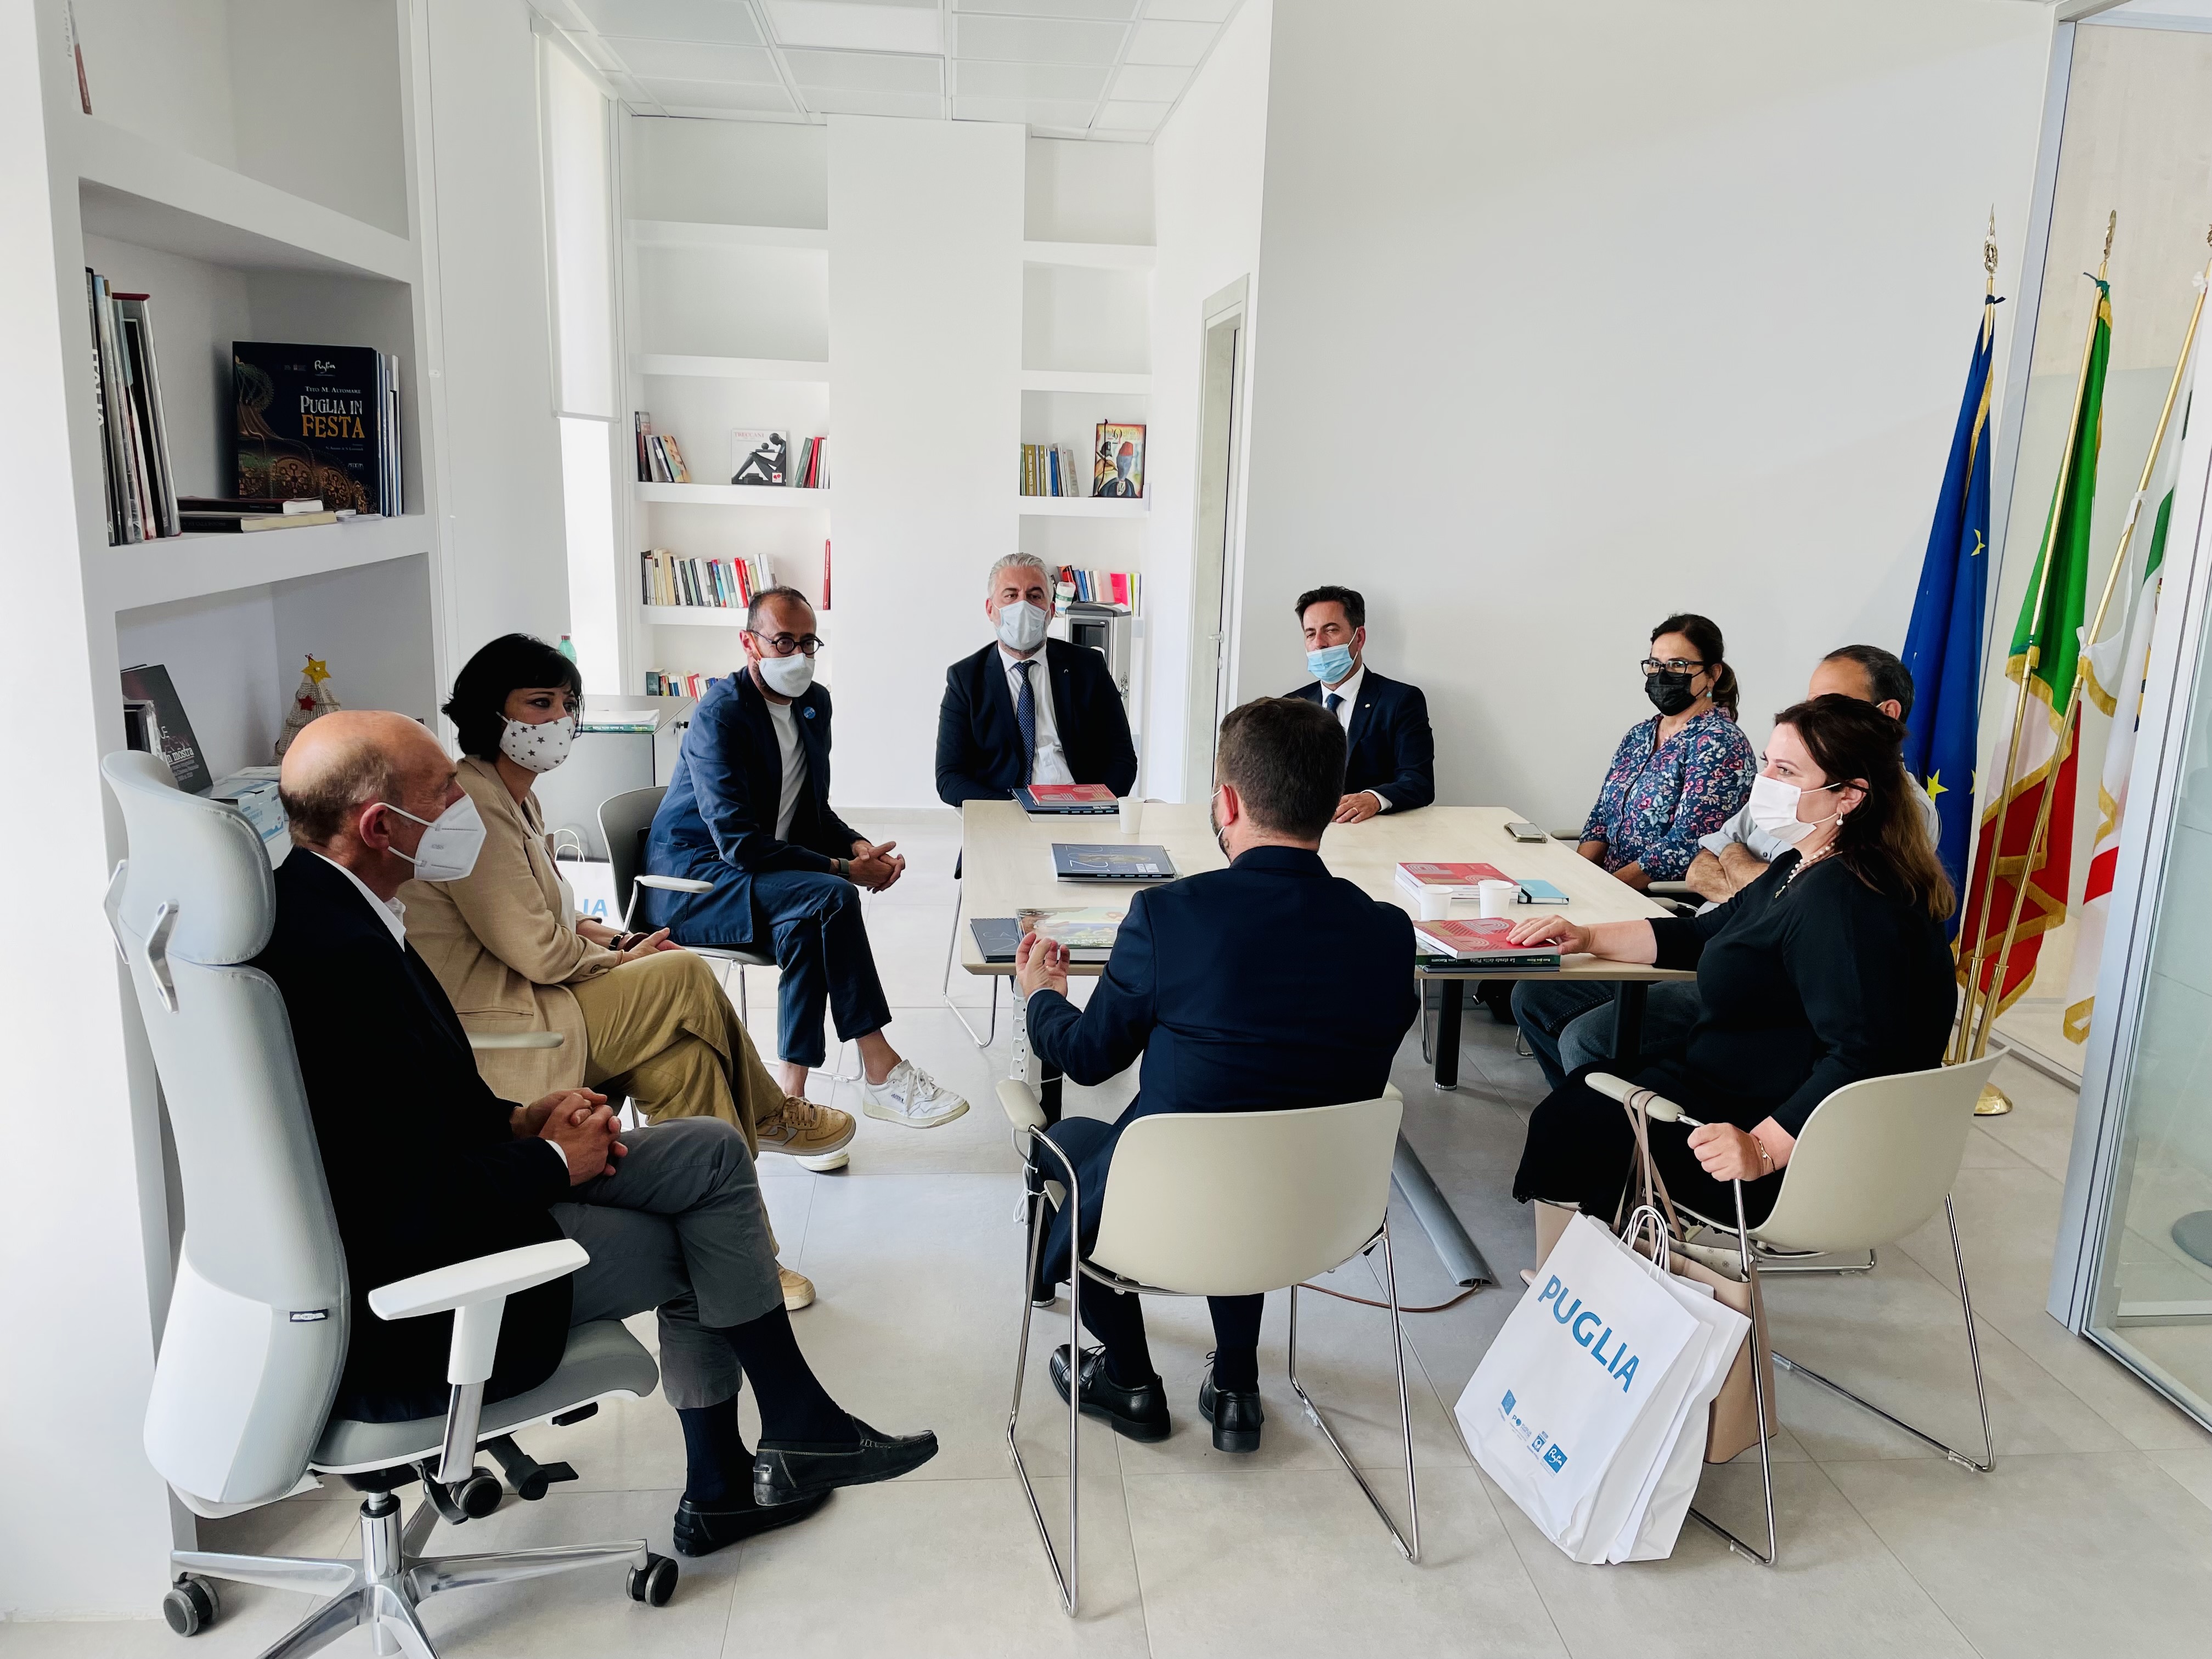 Galleria Incontri bilaterali Puglia - Albania: la cultura dell’innovazione per la crescita dei territori transfrontalieri - Diapositiva 5 di 11